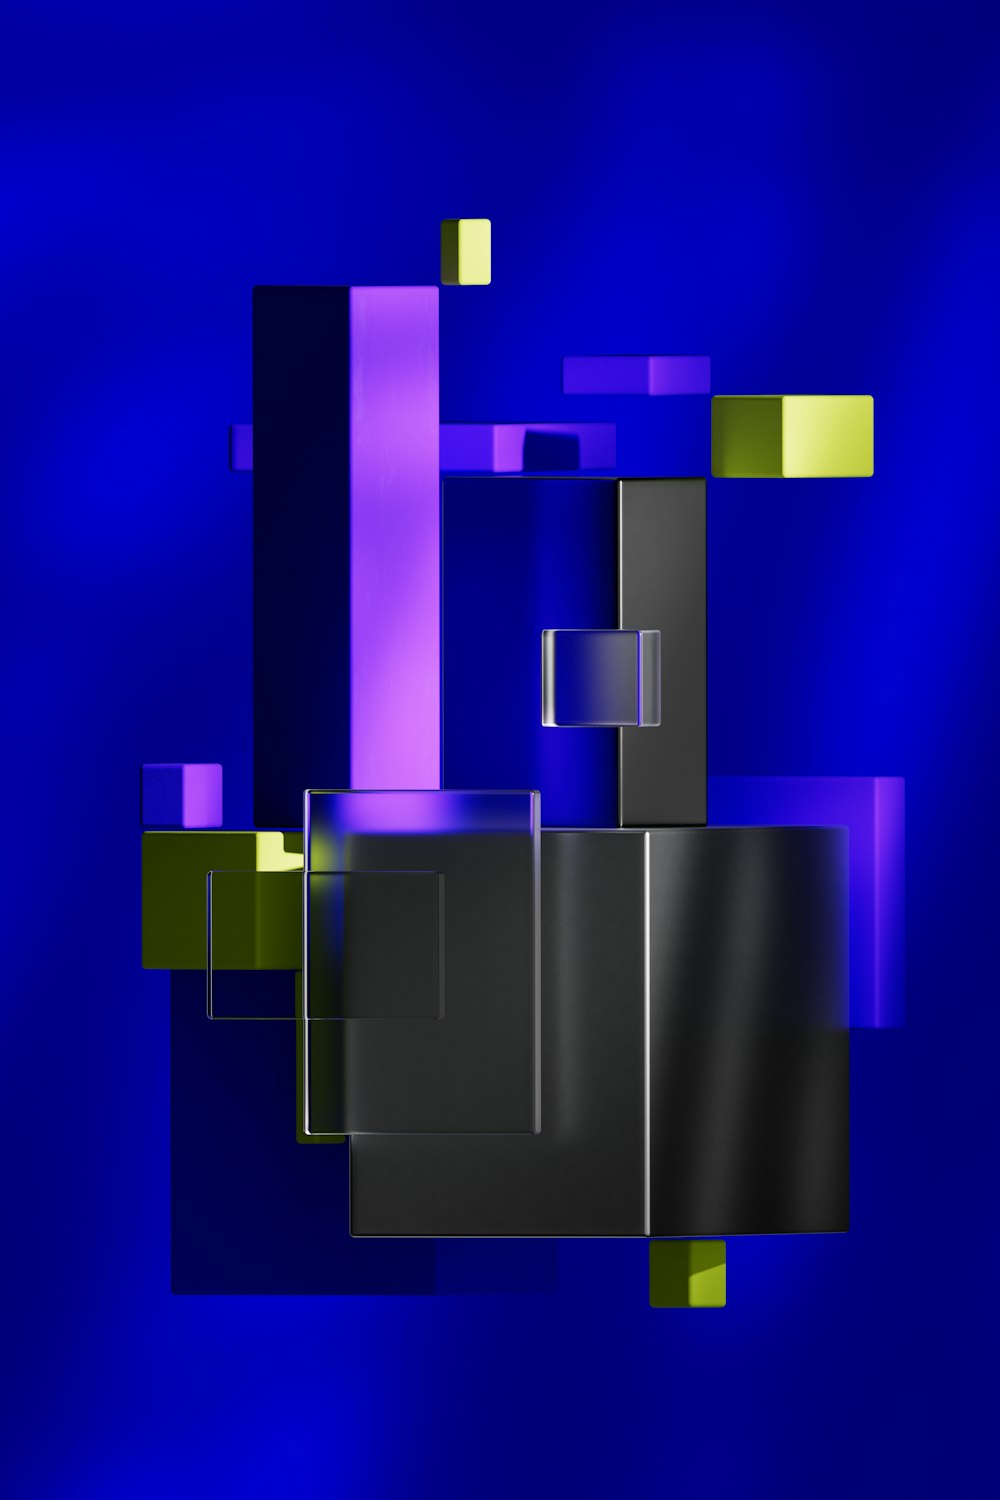 정사각형과 직사각형이 있는 파란색과 검은색 추상 배경